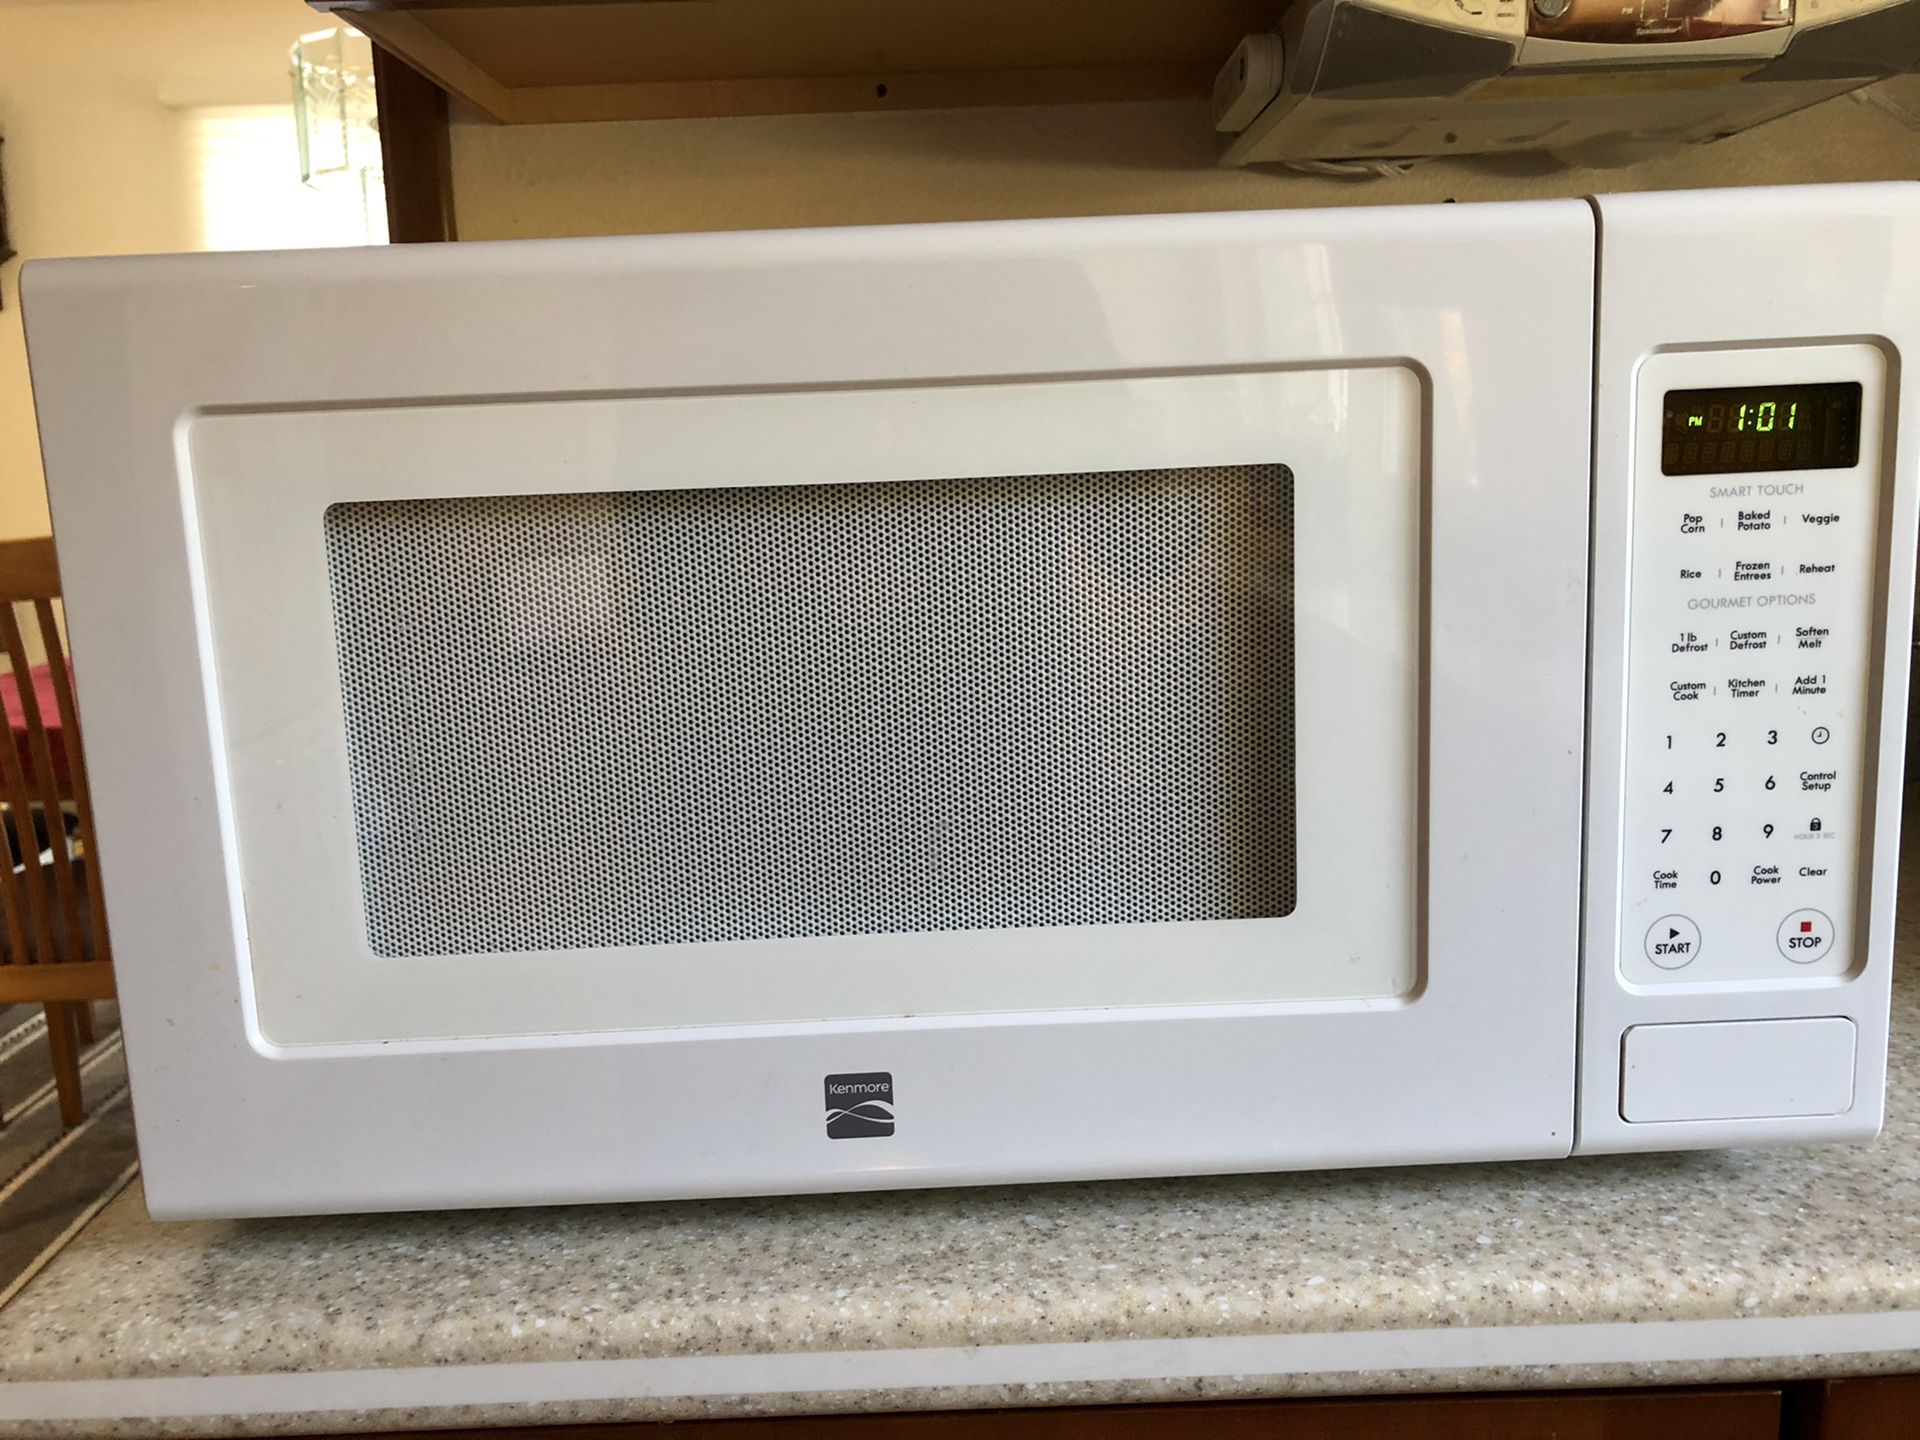 Kenmore microwave 1.2 cu ft 1200 watts, model 721.69122010